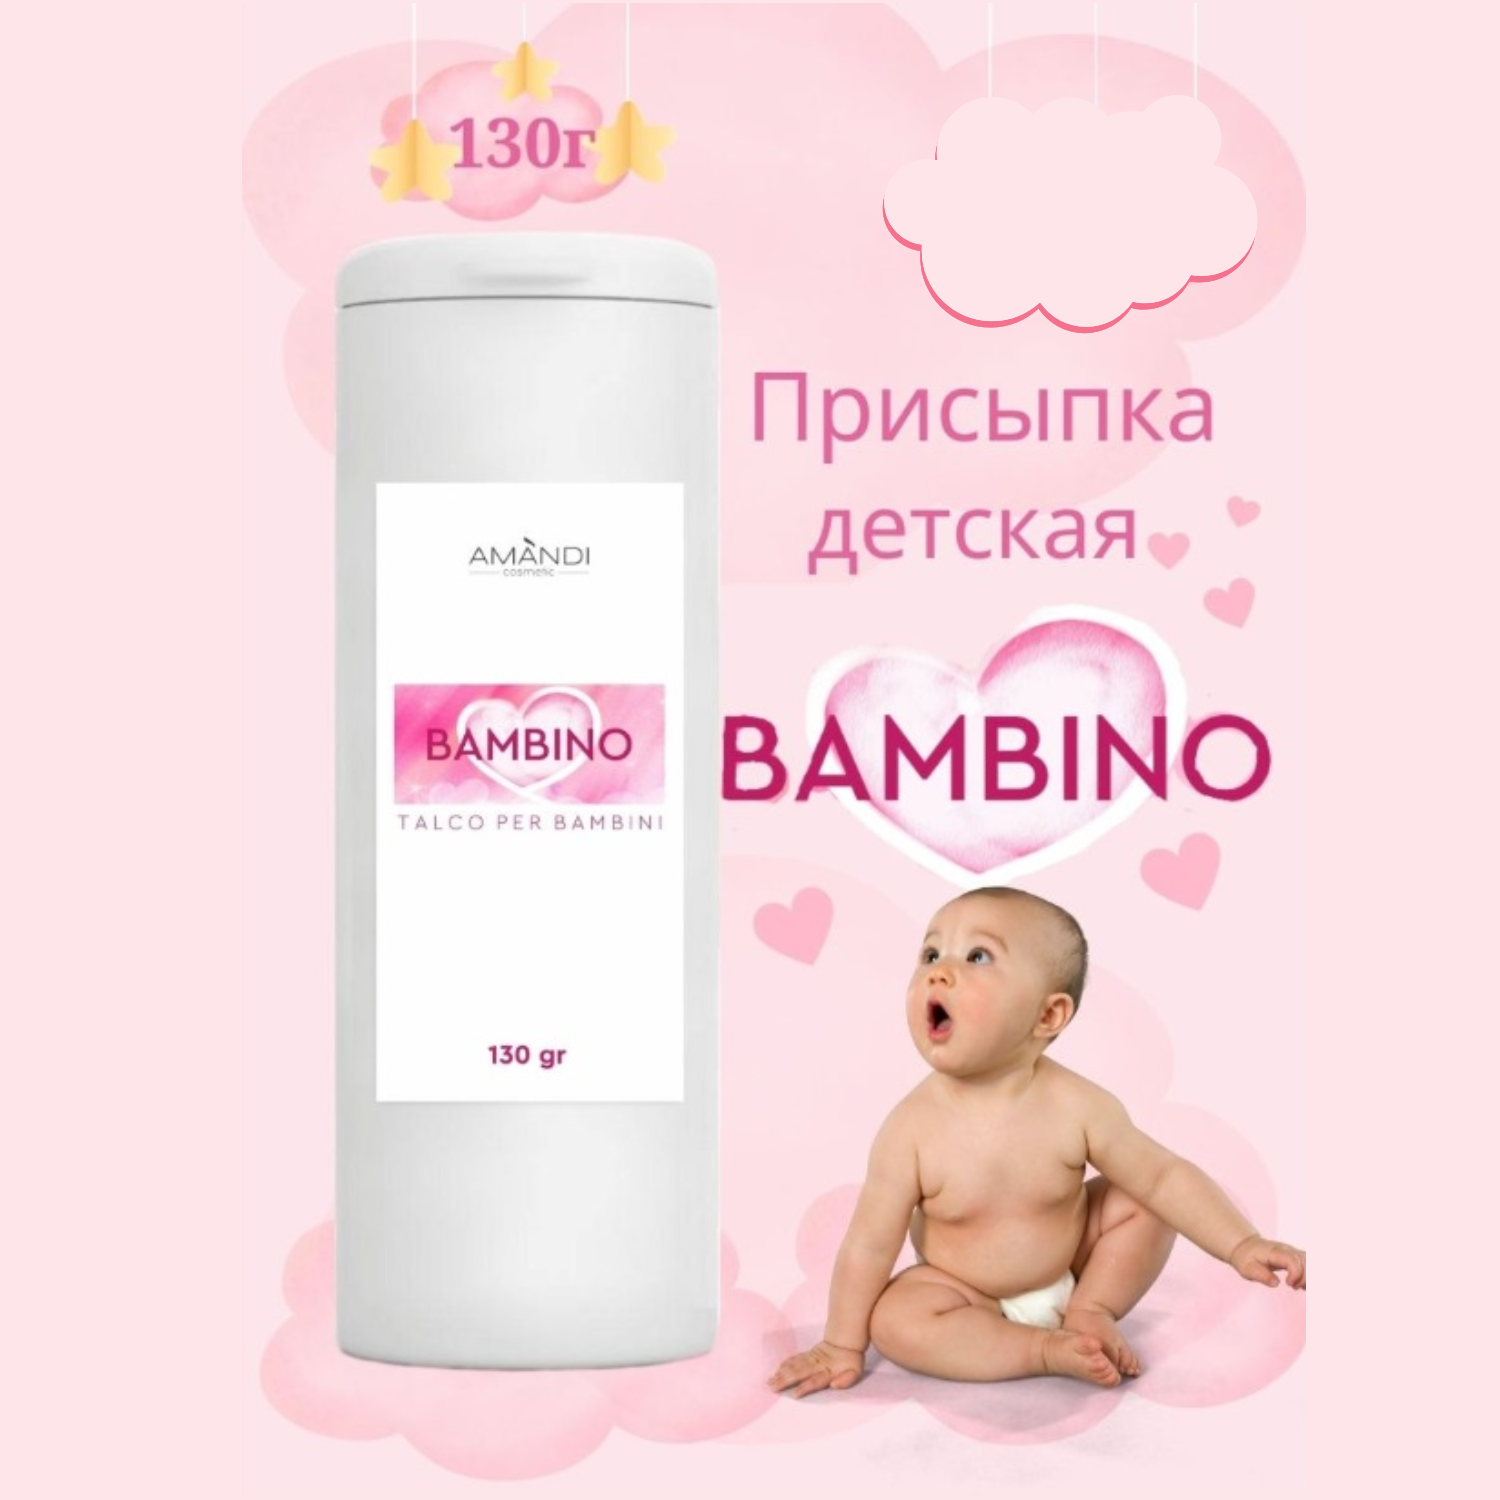 Присыпка детская AMANDI BAMBINO набор без отдушки и с ароматом дыни 2 шт по 130 грамм - фото 2